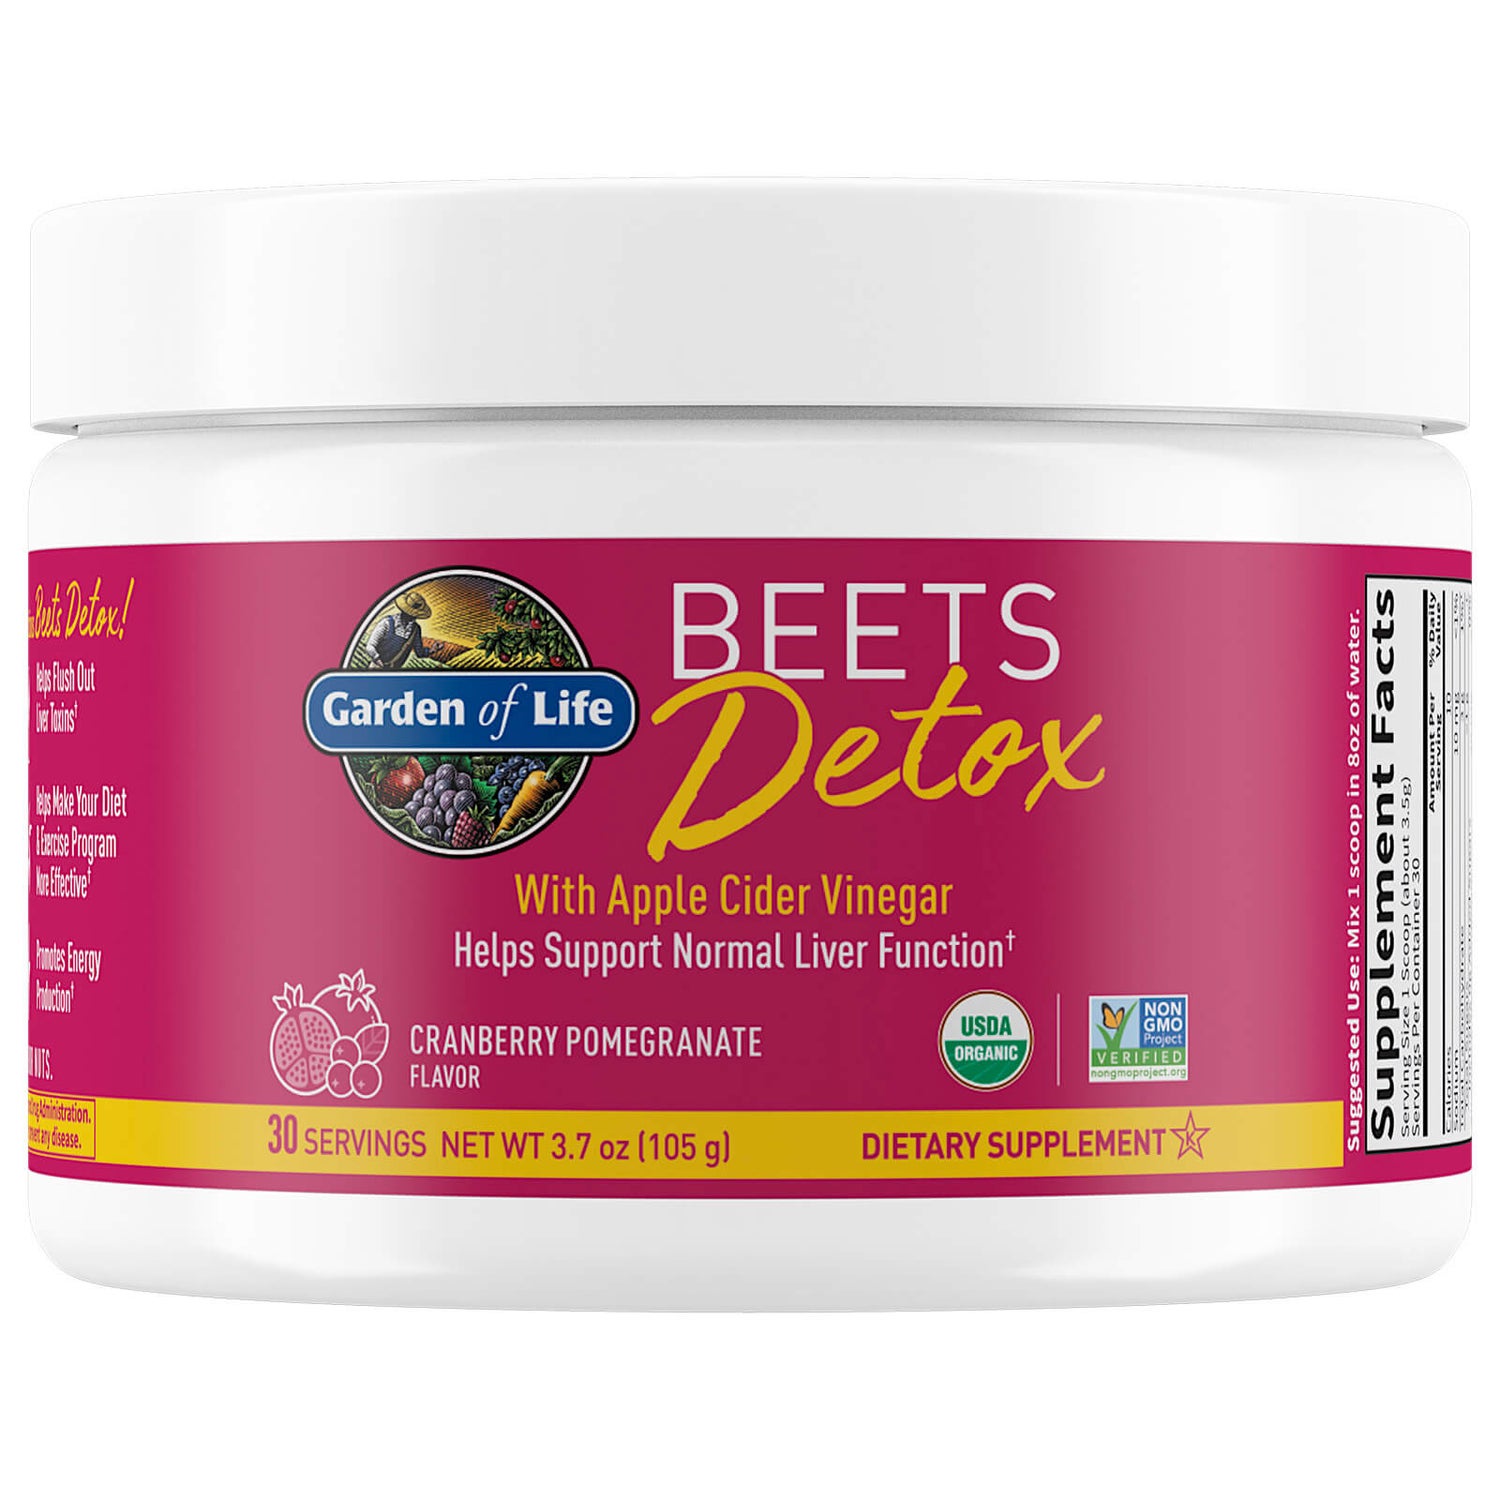 Detox Beets Powder - Cranberry Pomegranate